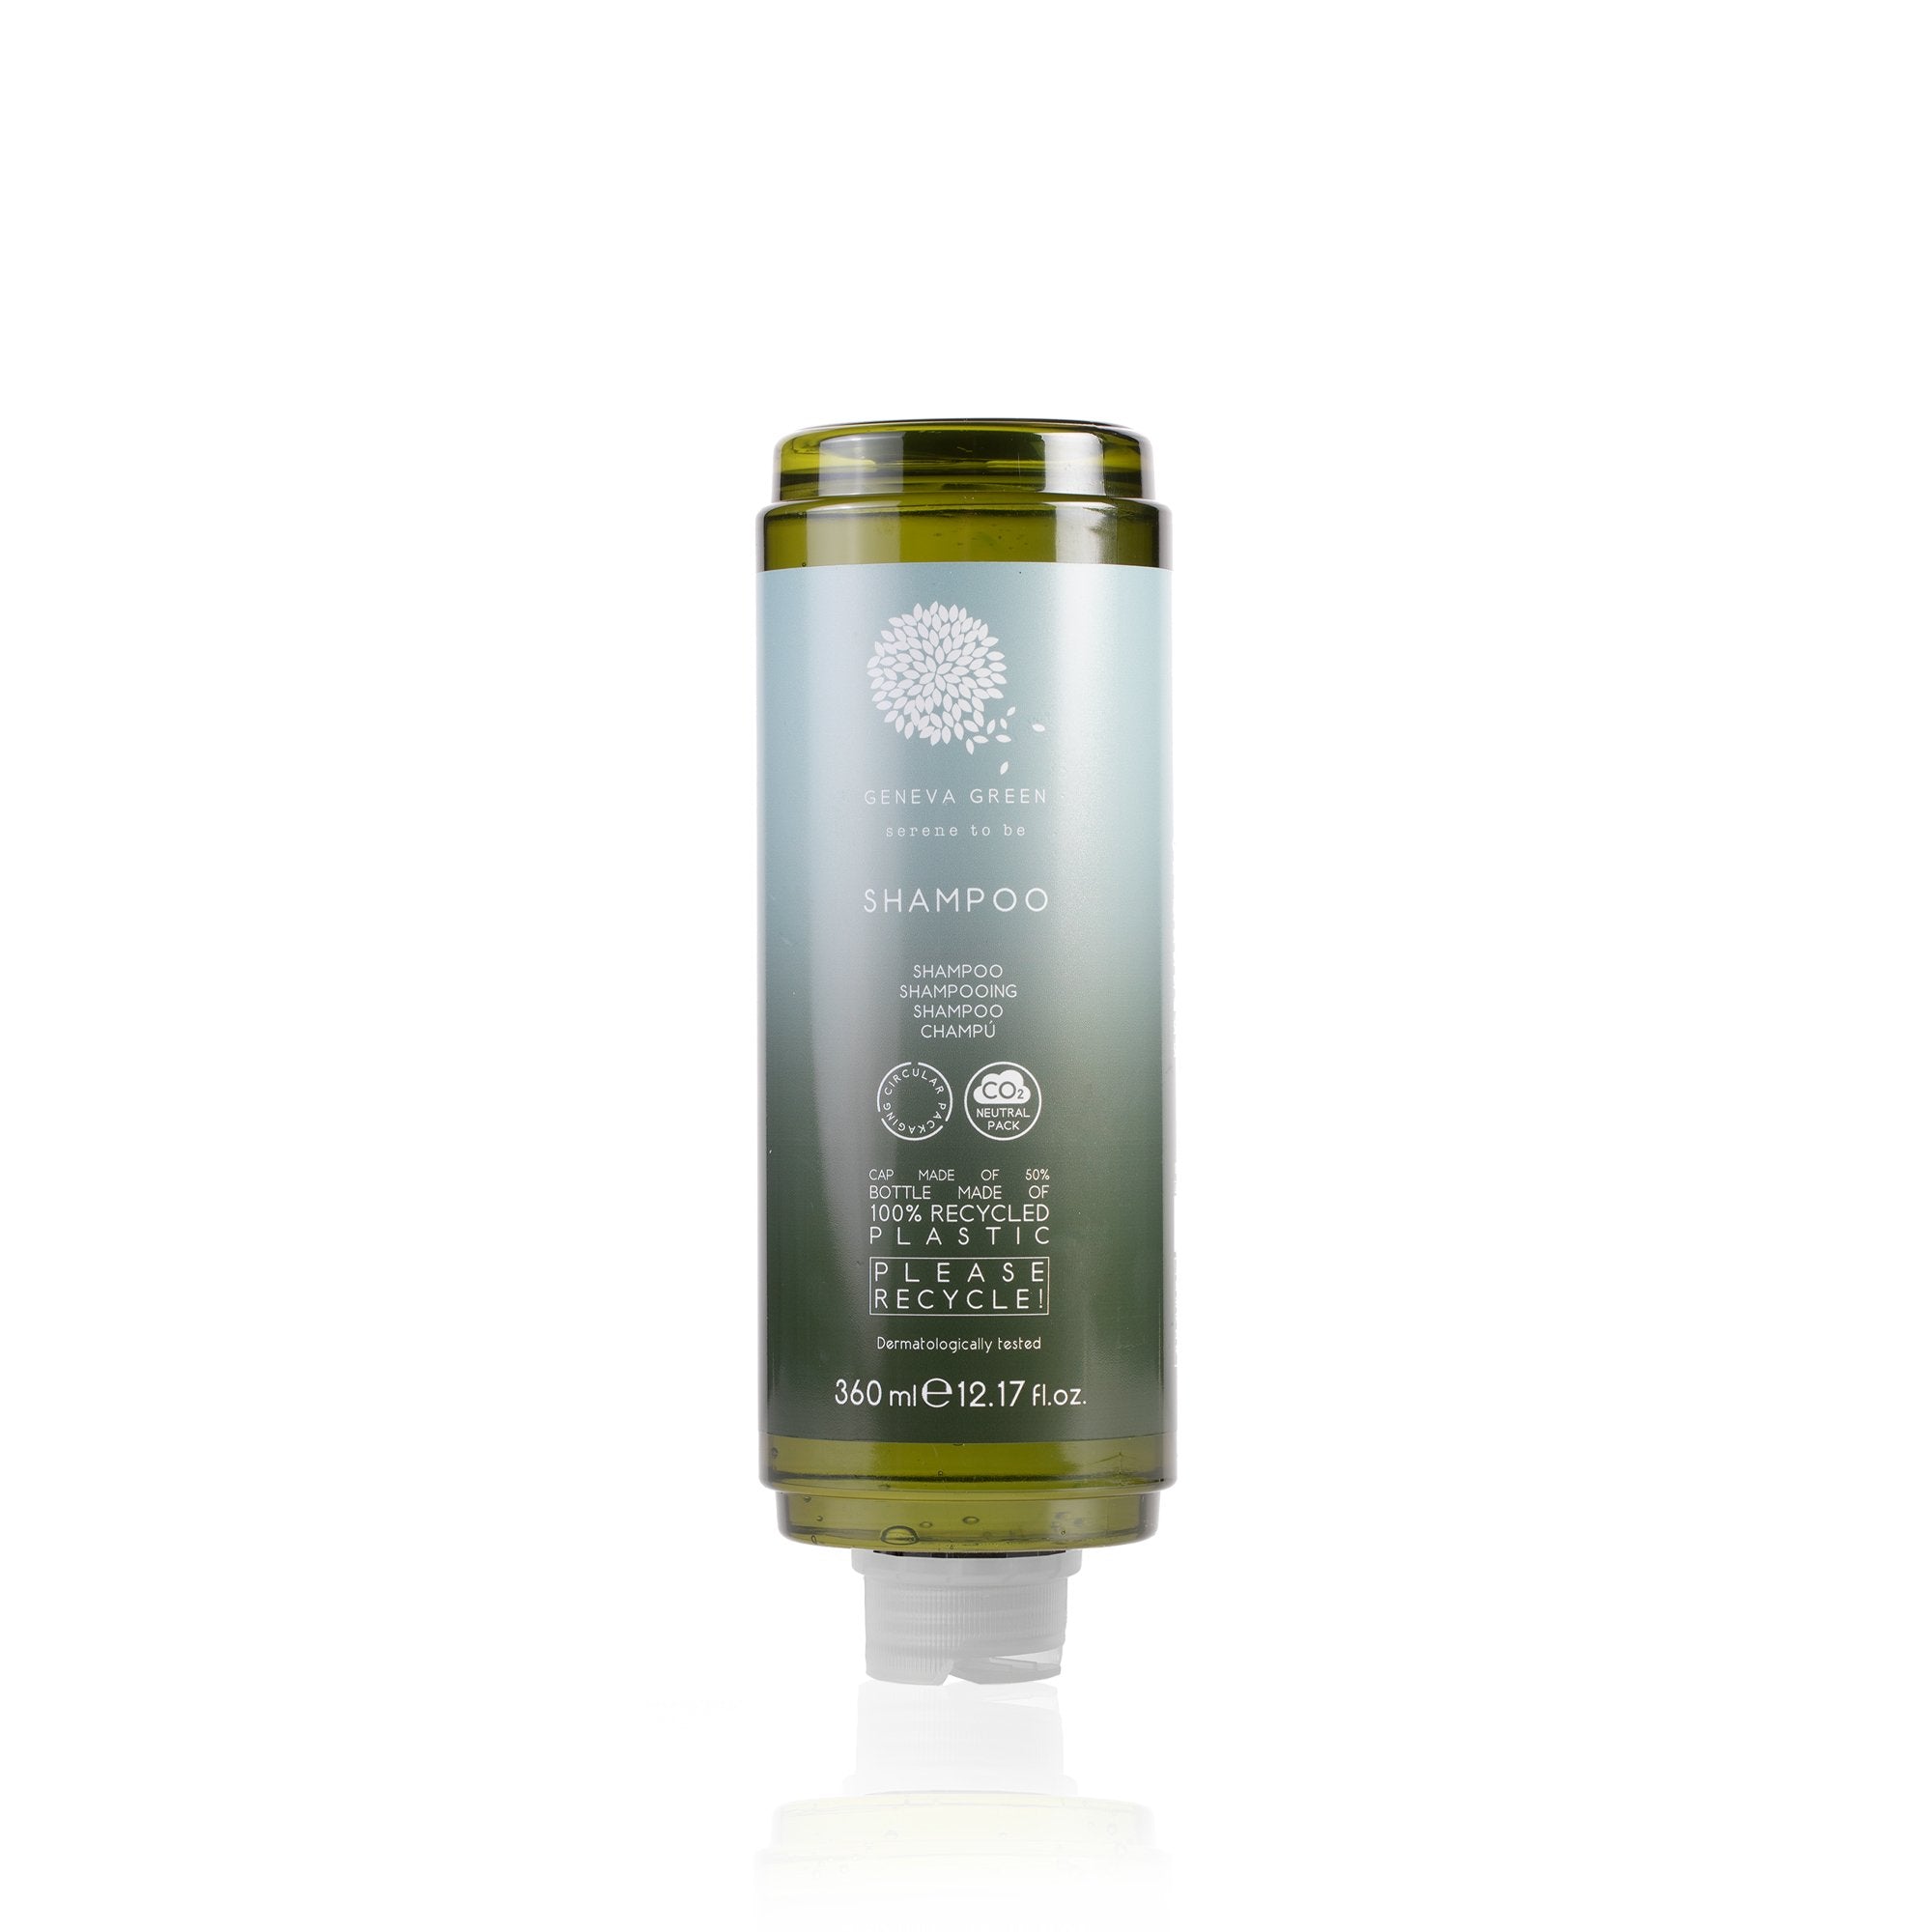 Geneva Green Shampoo Cartridge For Dispenser (360 ml) 